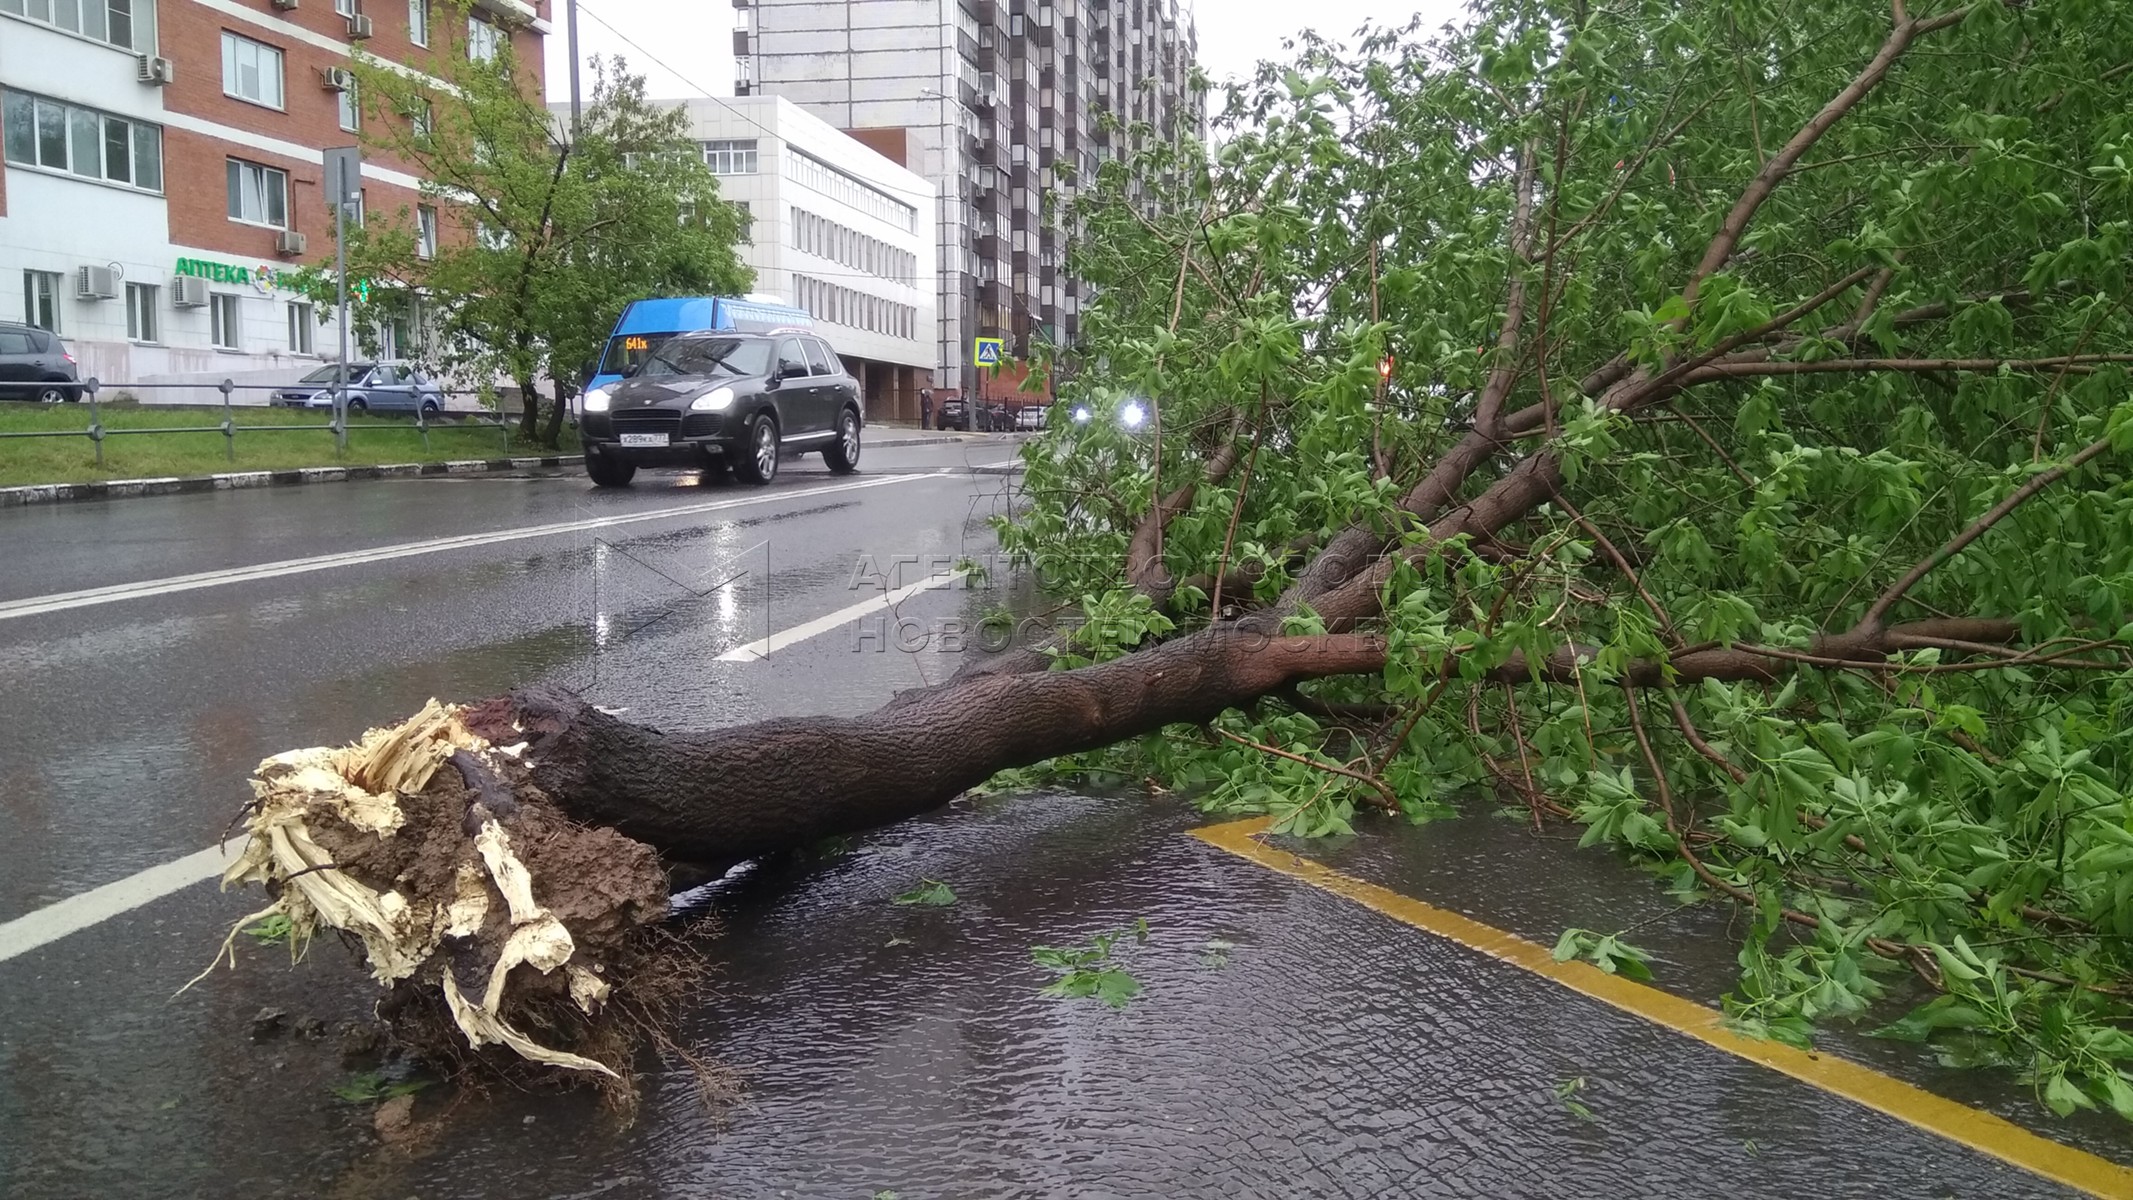 Ветер в москве деревья. Падающие деревья в Москве видео. Крепления для деревьев в Москве, дерево упало. Аварийное дерево падает. Последствия шквалистого ветра дерево упало на остановку.